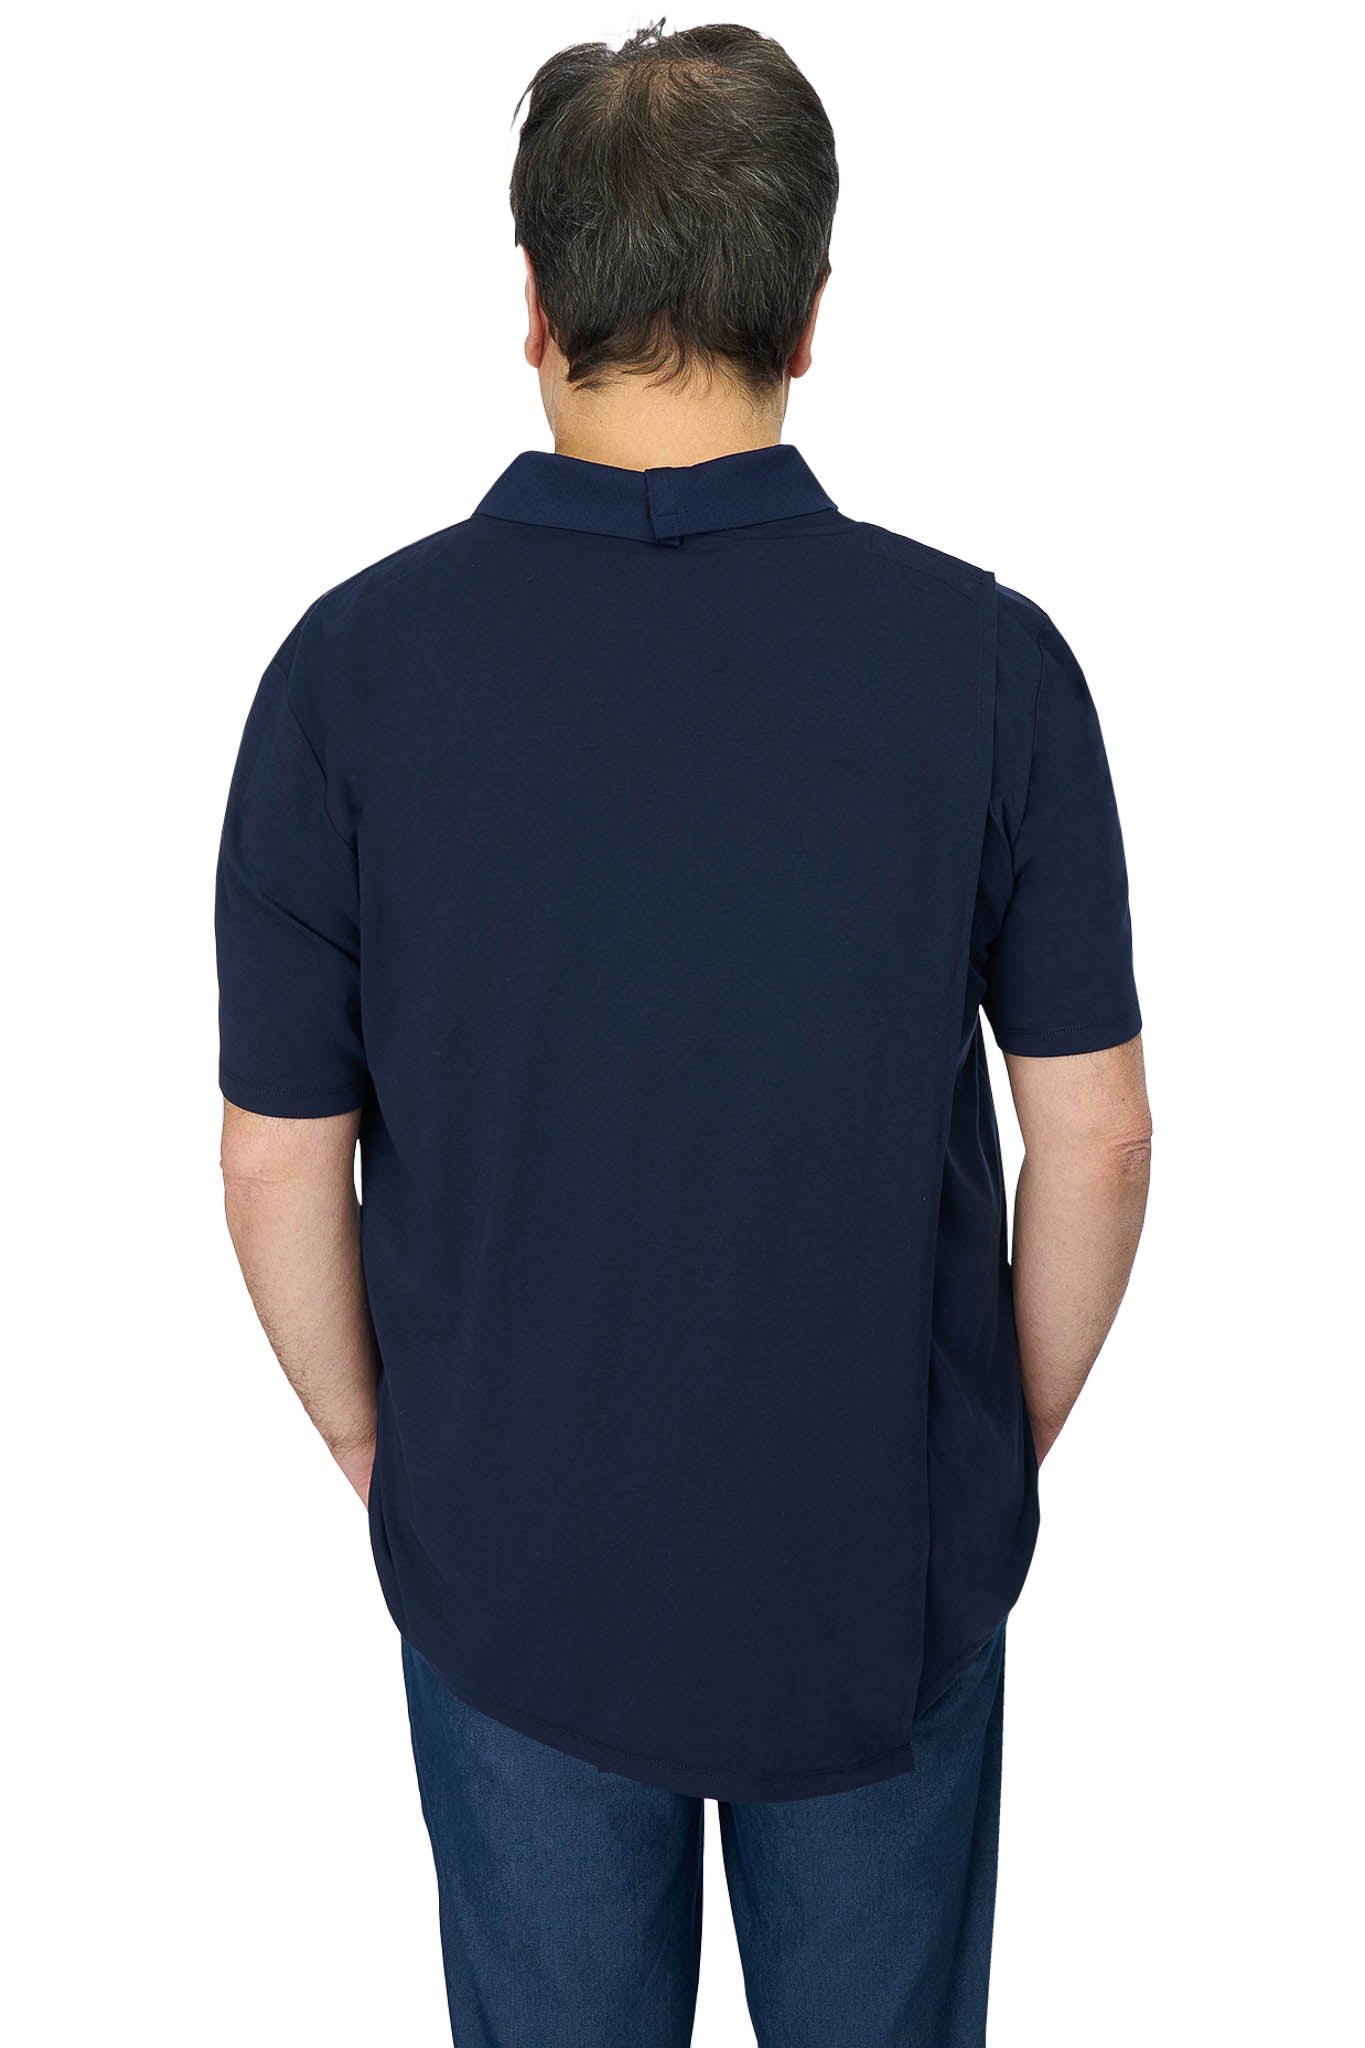 Adaptive Polo Shirt - Ralfie | Navy